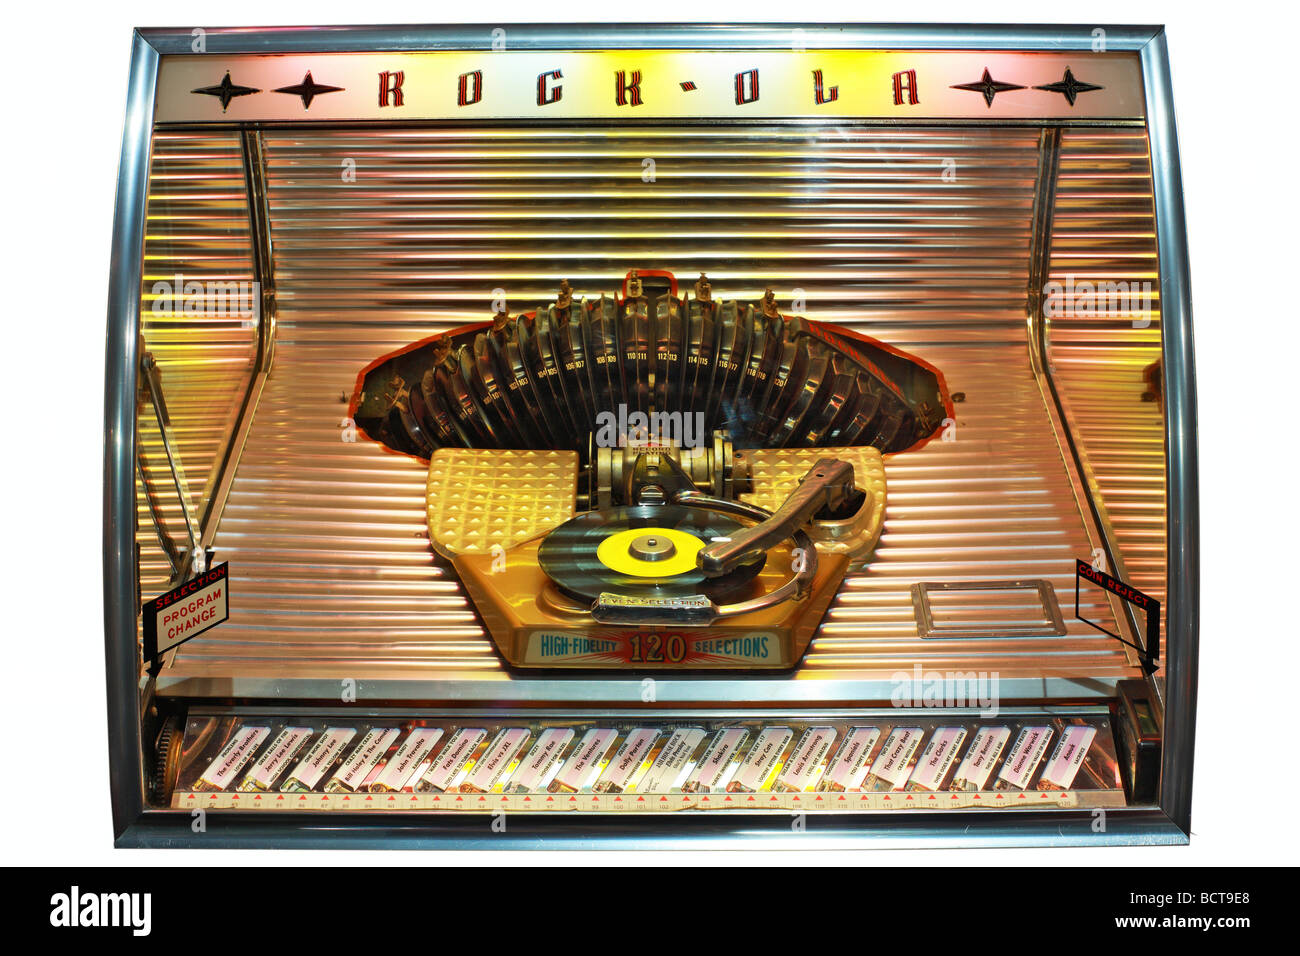 Rock-Ola 1448 desde el año 1955, el jukebox. Foto de stock